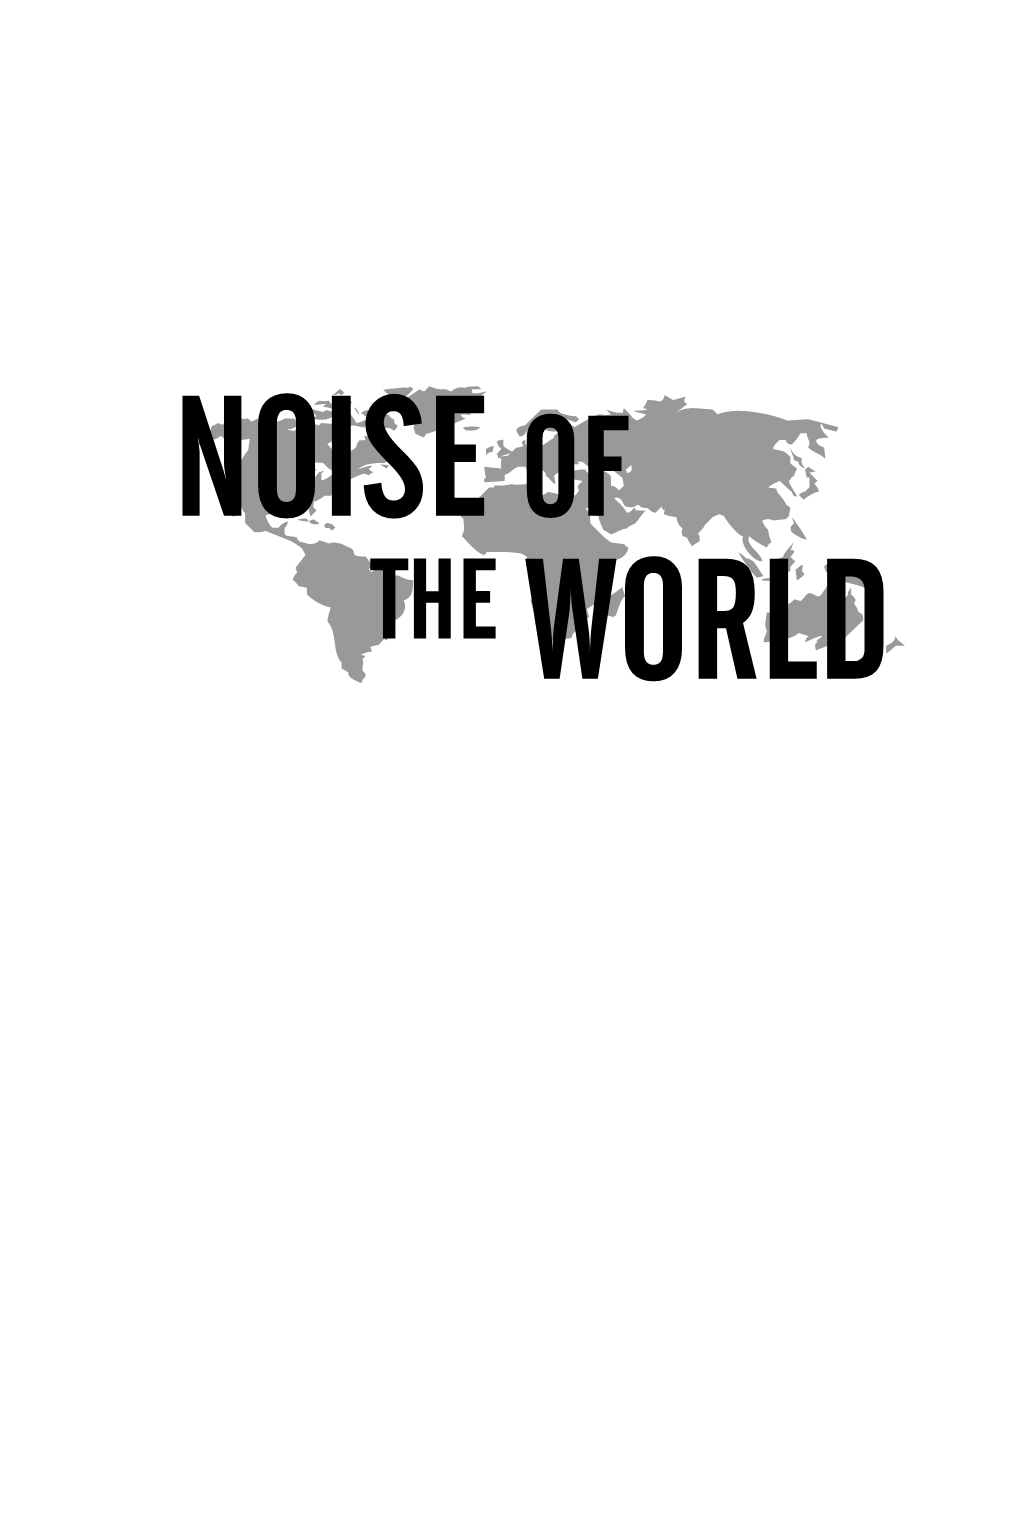 Noise of the World ISBN: 1-932360-60-3 ©2004 Hank Bordowitz